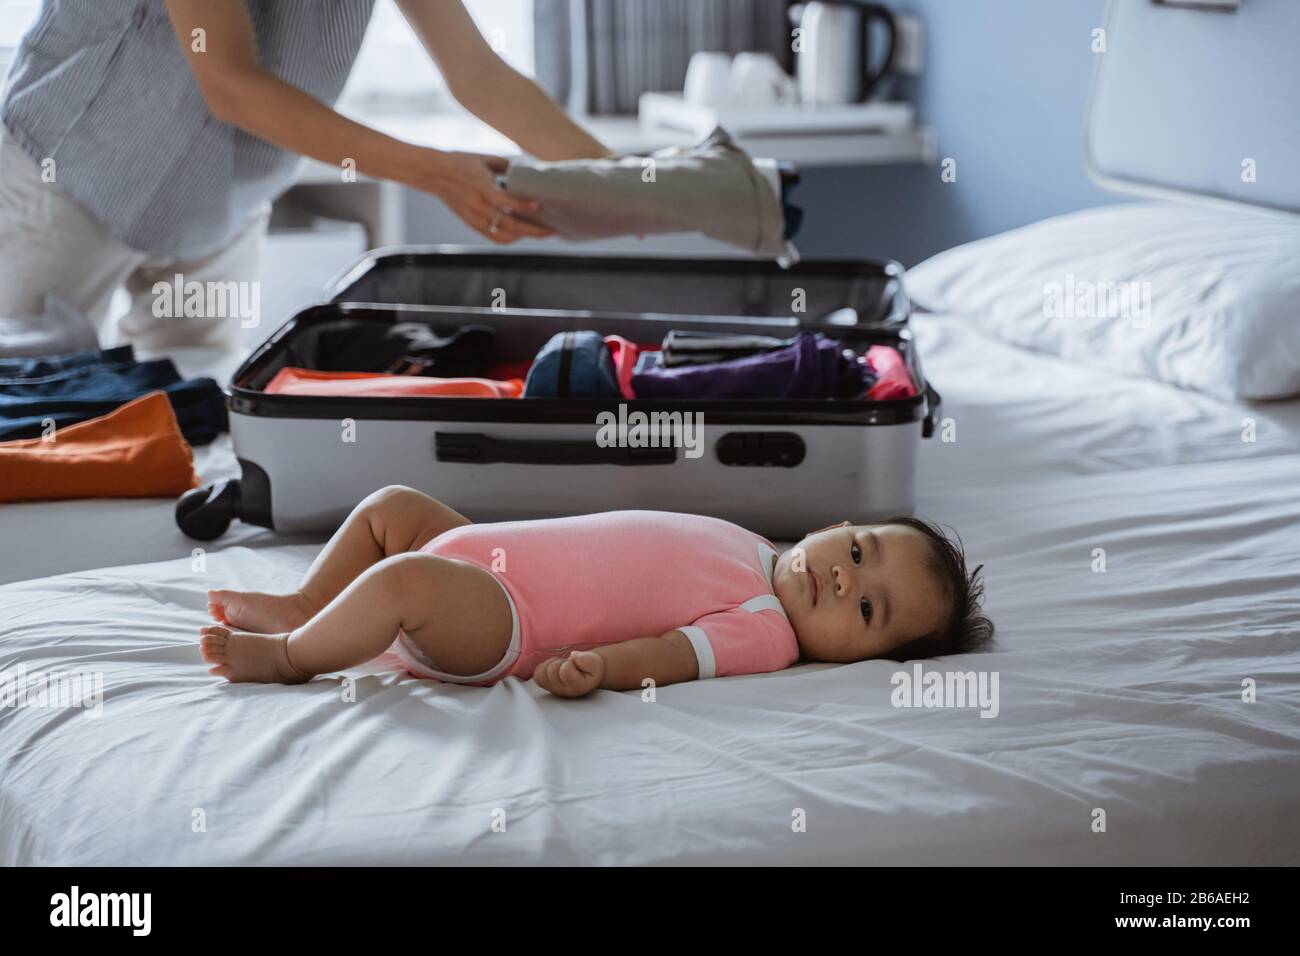 Süßes Baby, das auf dem Bett neben einem Koffer liegt und mit Kleidung gefüllt ist, die für eine Urlaubsreise vorbereitet ist Stockfoto